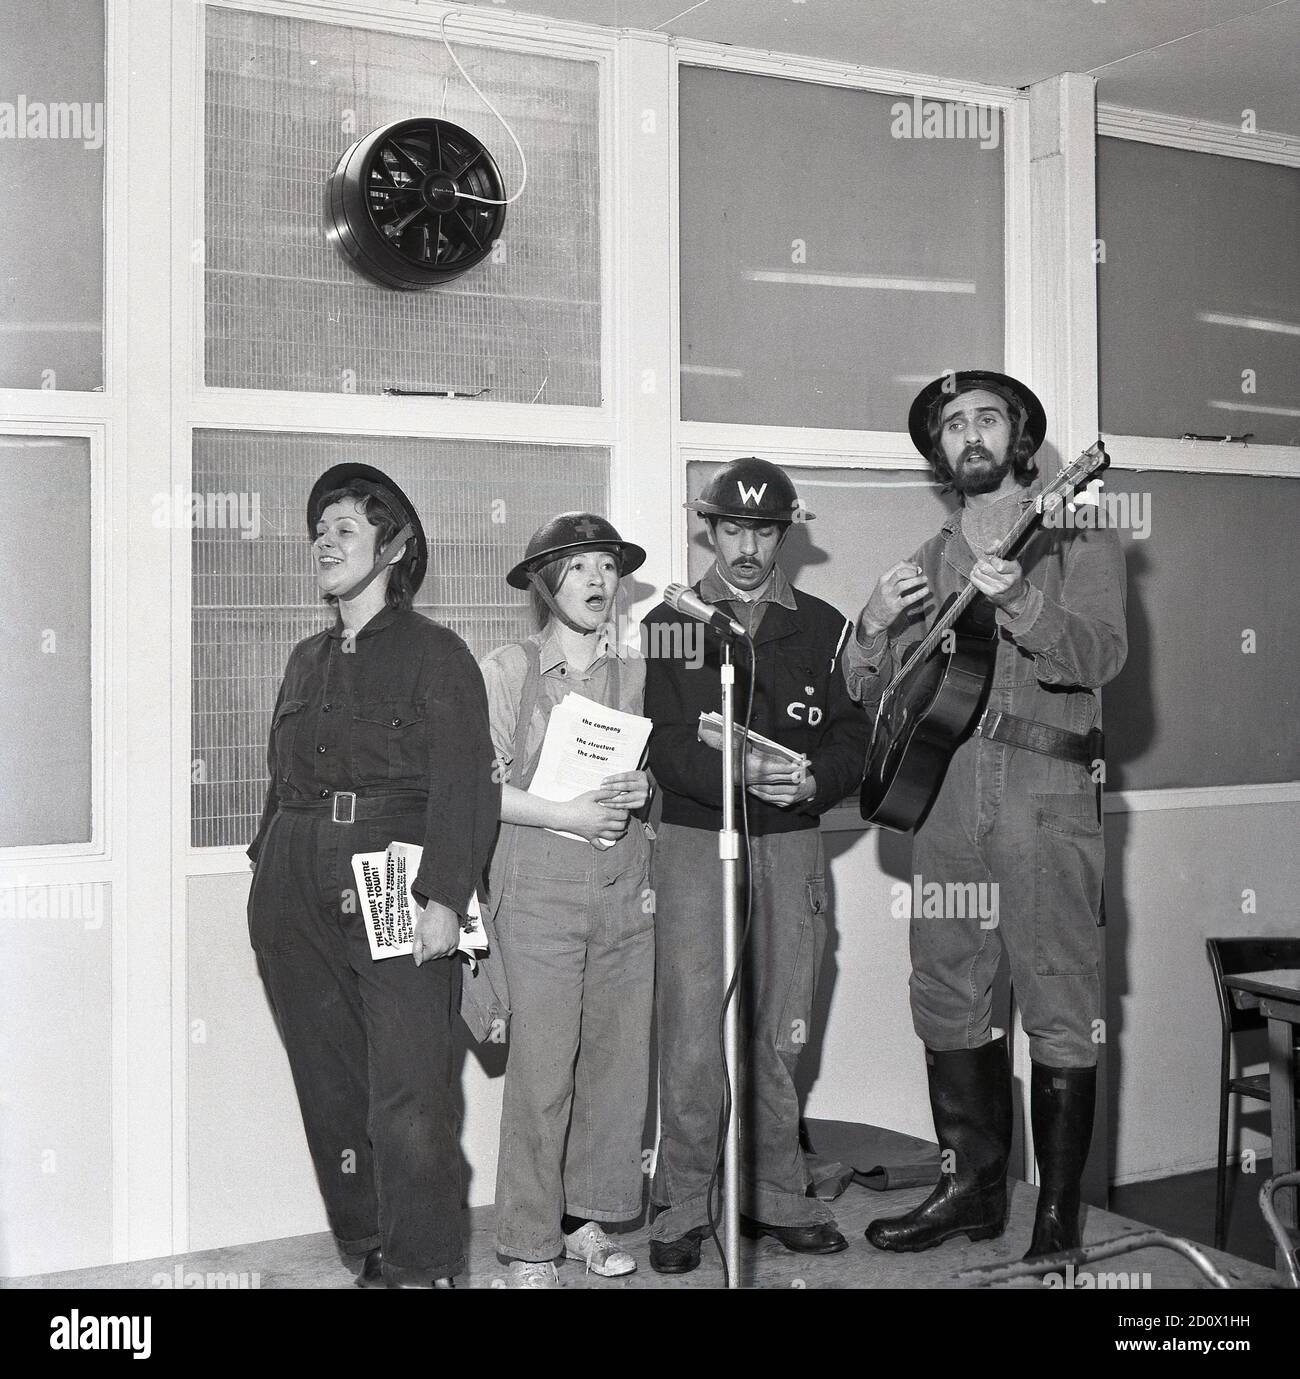 1972, photo historique de quatre artistes adultes de la société de théâtre London Bubble vêtus de costumes de la Seconde Guerre mondiale présentant un divertissement, « The Blitz Show » dans une salle d'une fête d'enfants, Londres, Angleterre, Royaume-Uni. Conçu par Frank Hatherley, le spectacle était basé sur ceux qui ont amusé les Londoniens dans les abris souterrains pendant la hauteur du Blitz en mai 1941. Ces artistes n'étaient pas des artistes professionnels, mais des membres de la communauté locale qui s'amusaient et se faisaient un plaisir pour ceux qui souffrent de difficultés dans cette période des plus terribles. Banque D'Images